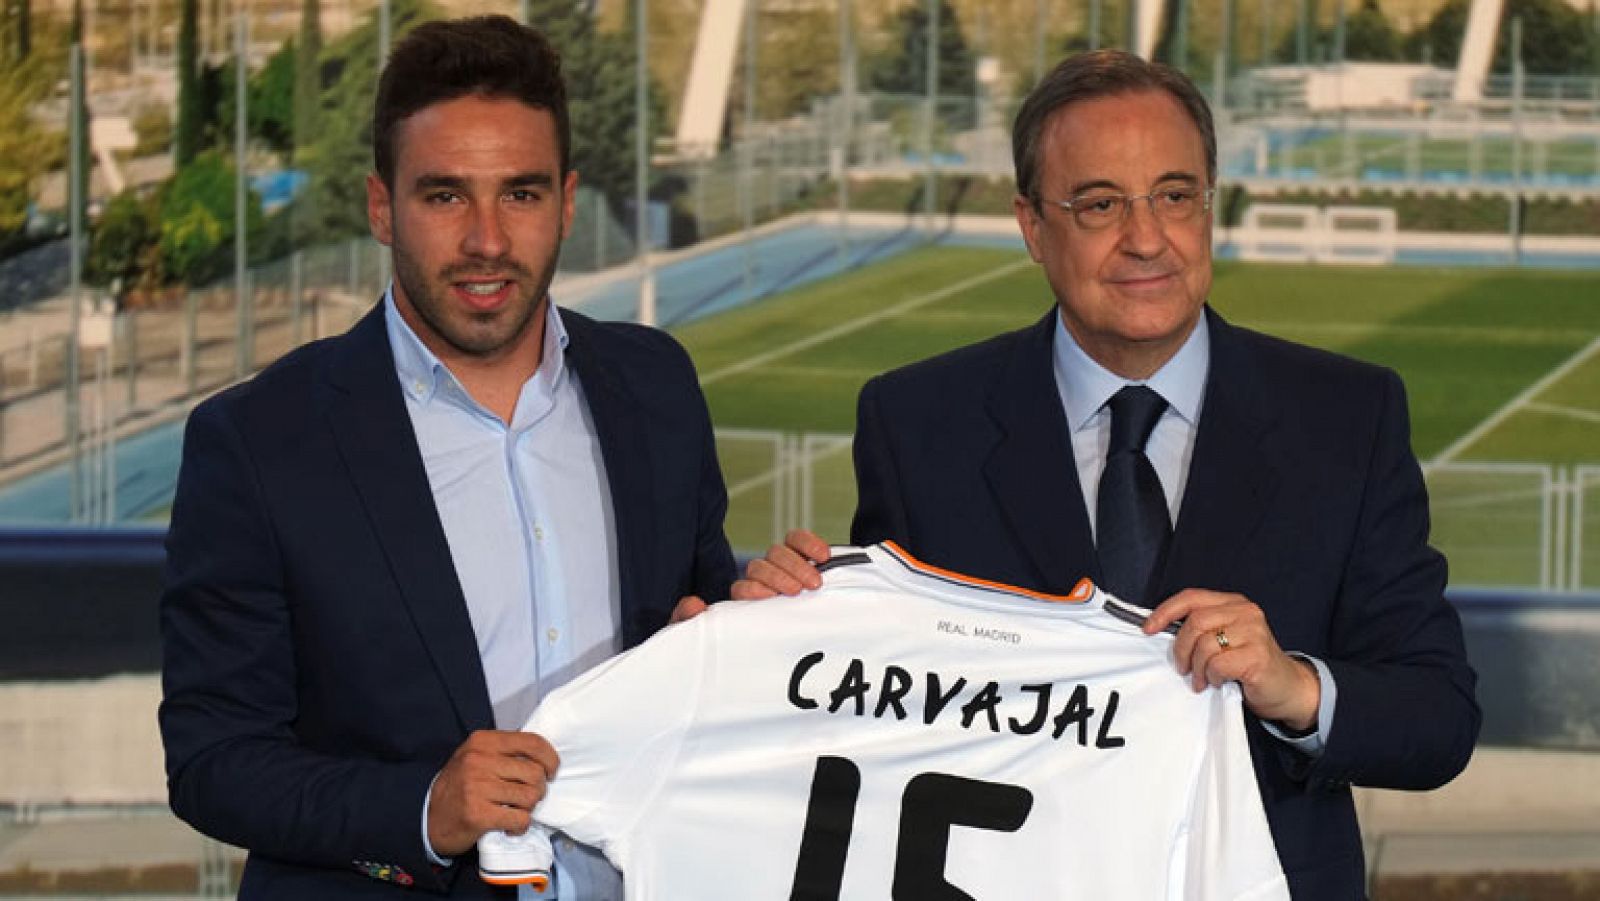 Telediario 1: Carvajal: "Voy a intentar hacer mejor a este club" | RTVE Play